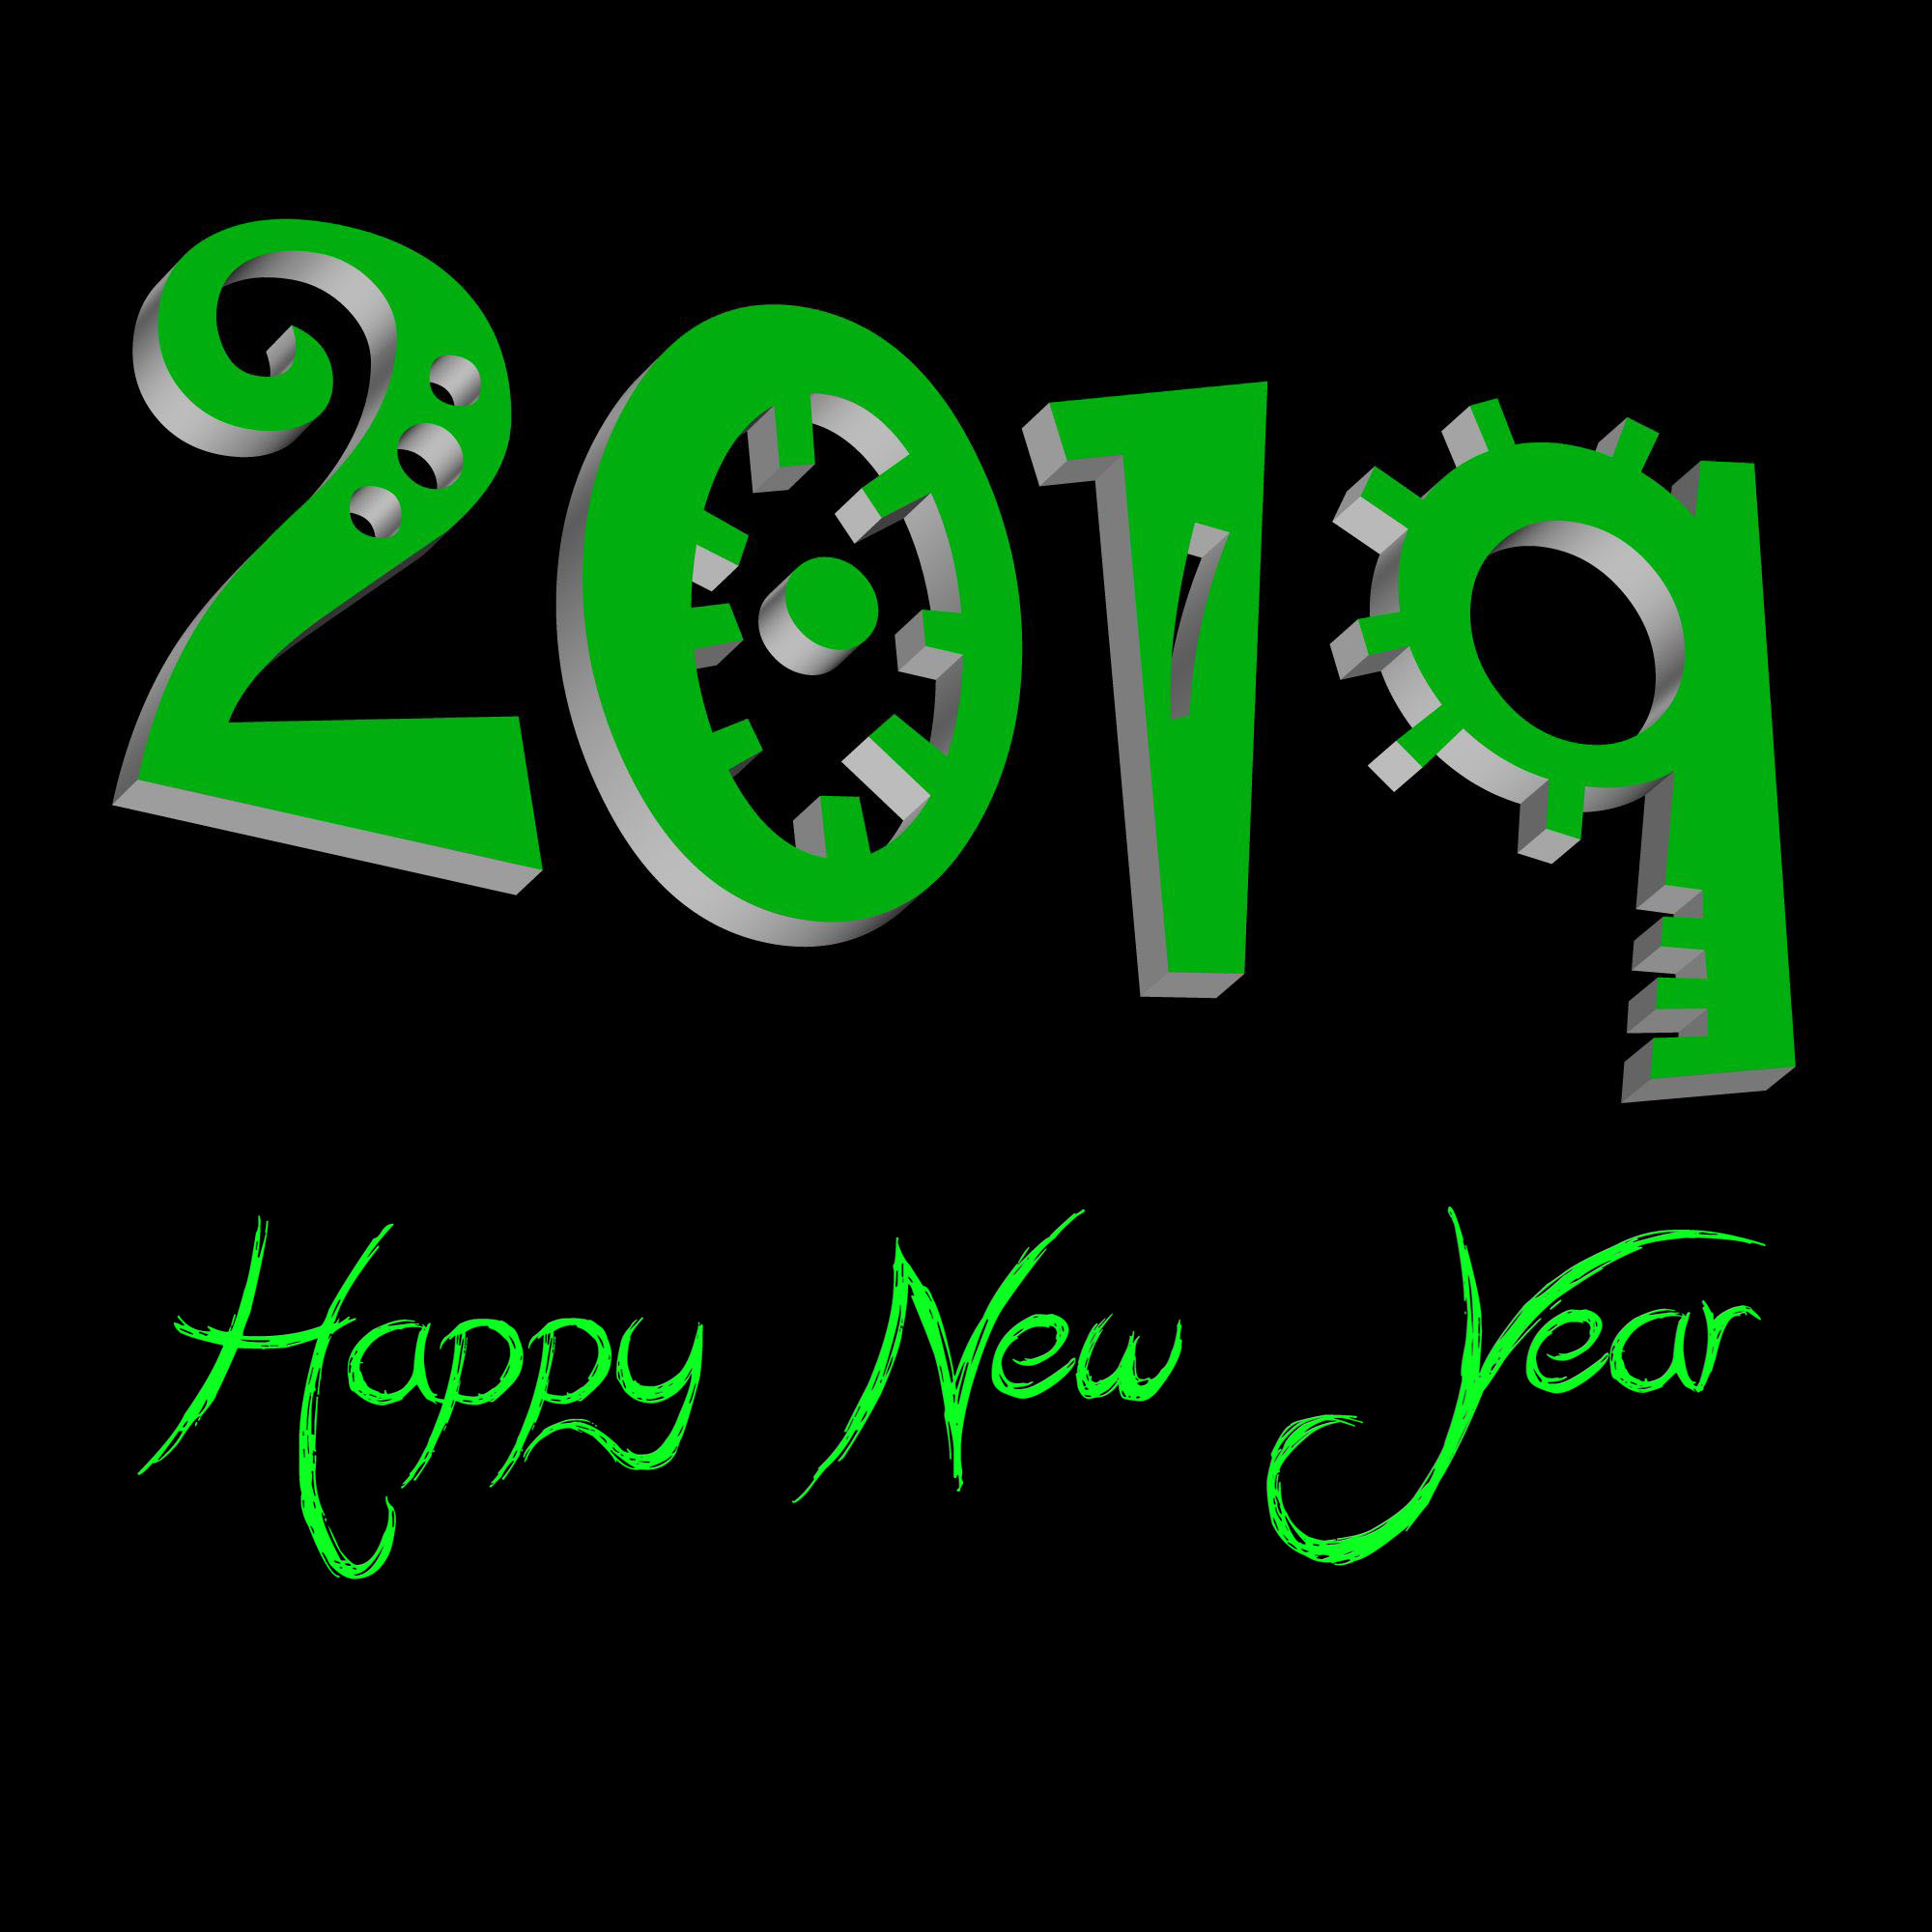 Happy New Year by Susanlu4esm